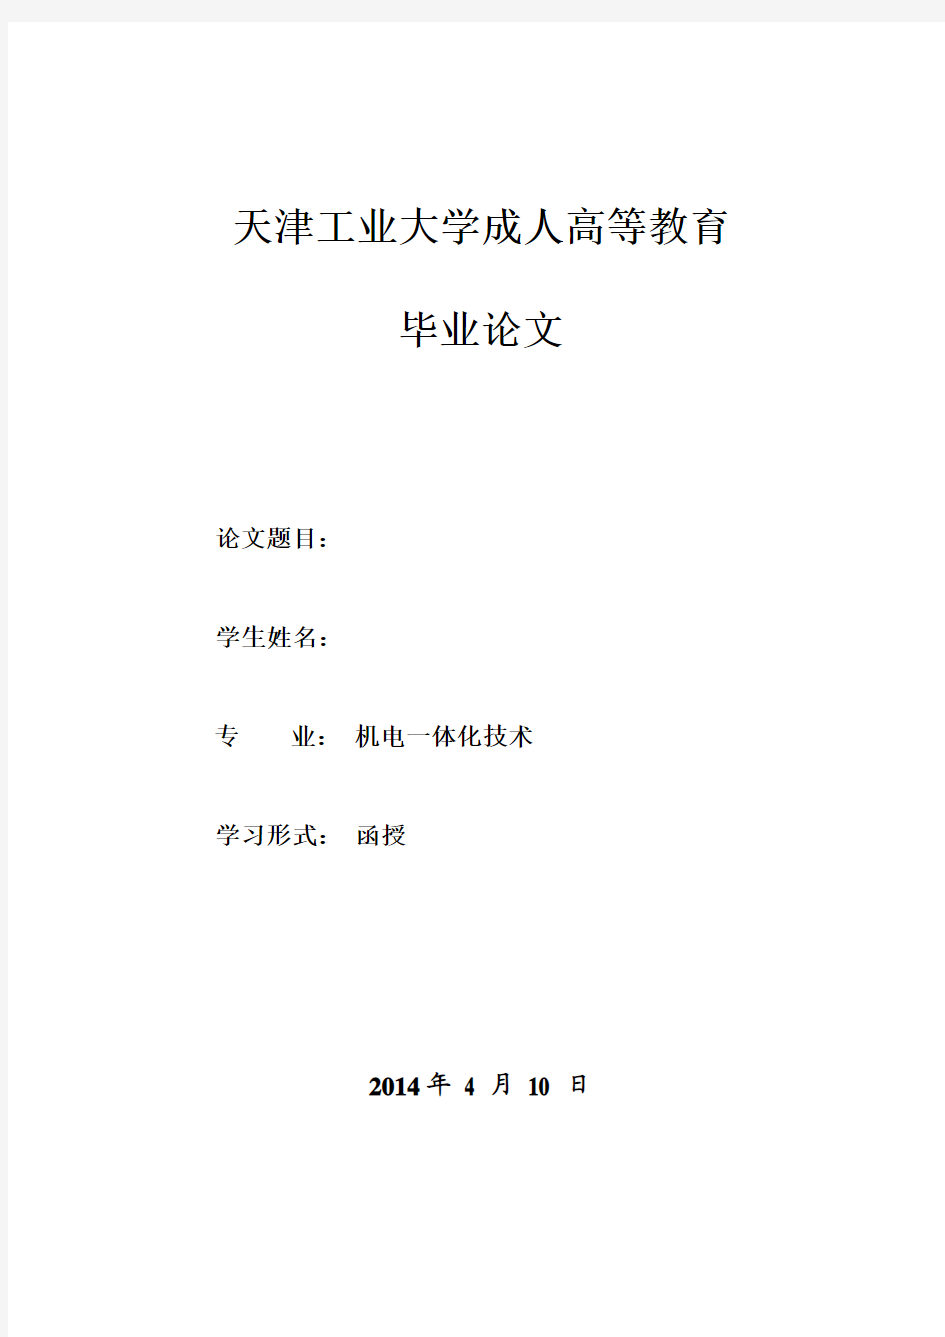 天津工业大学毕业设计(论文)封面